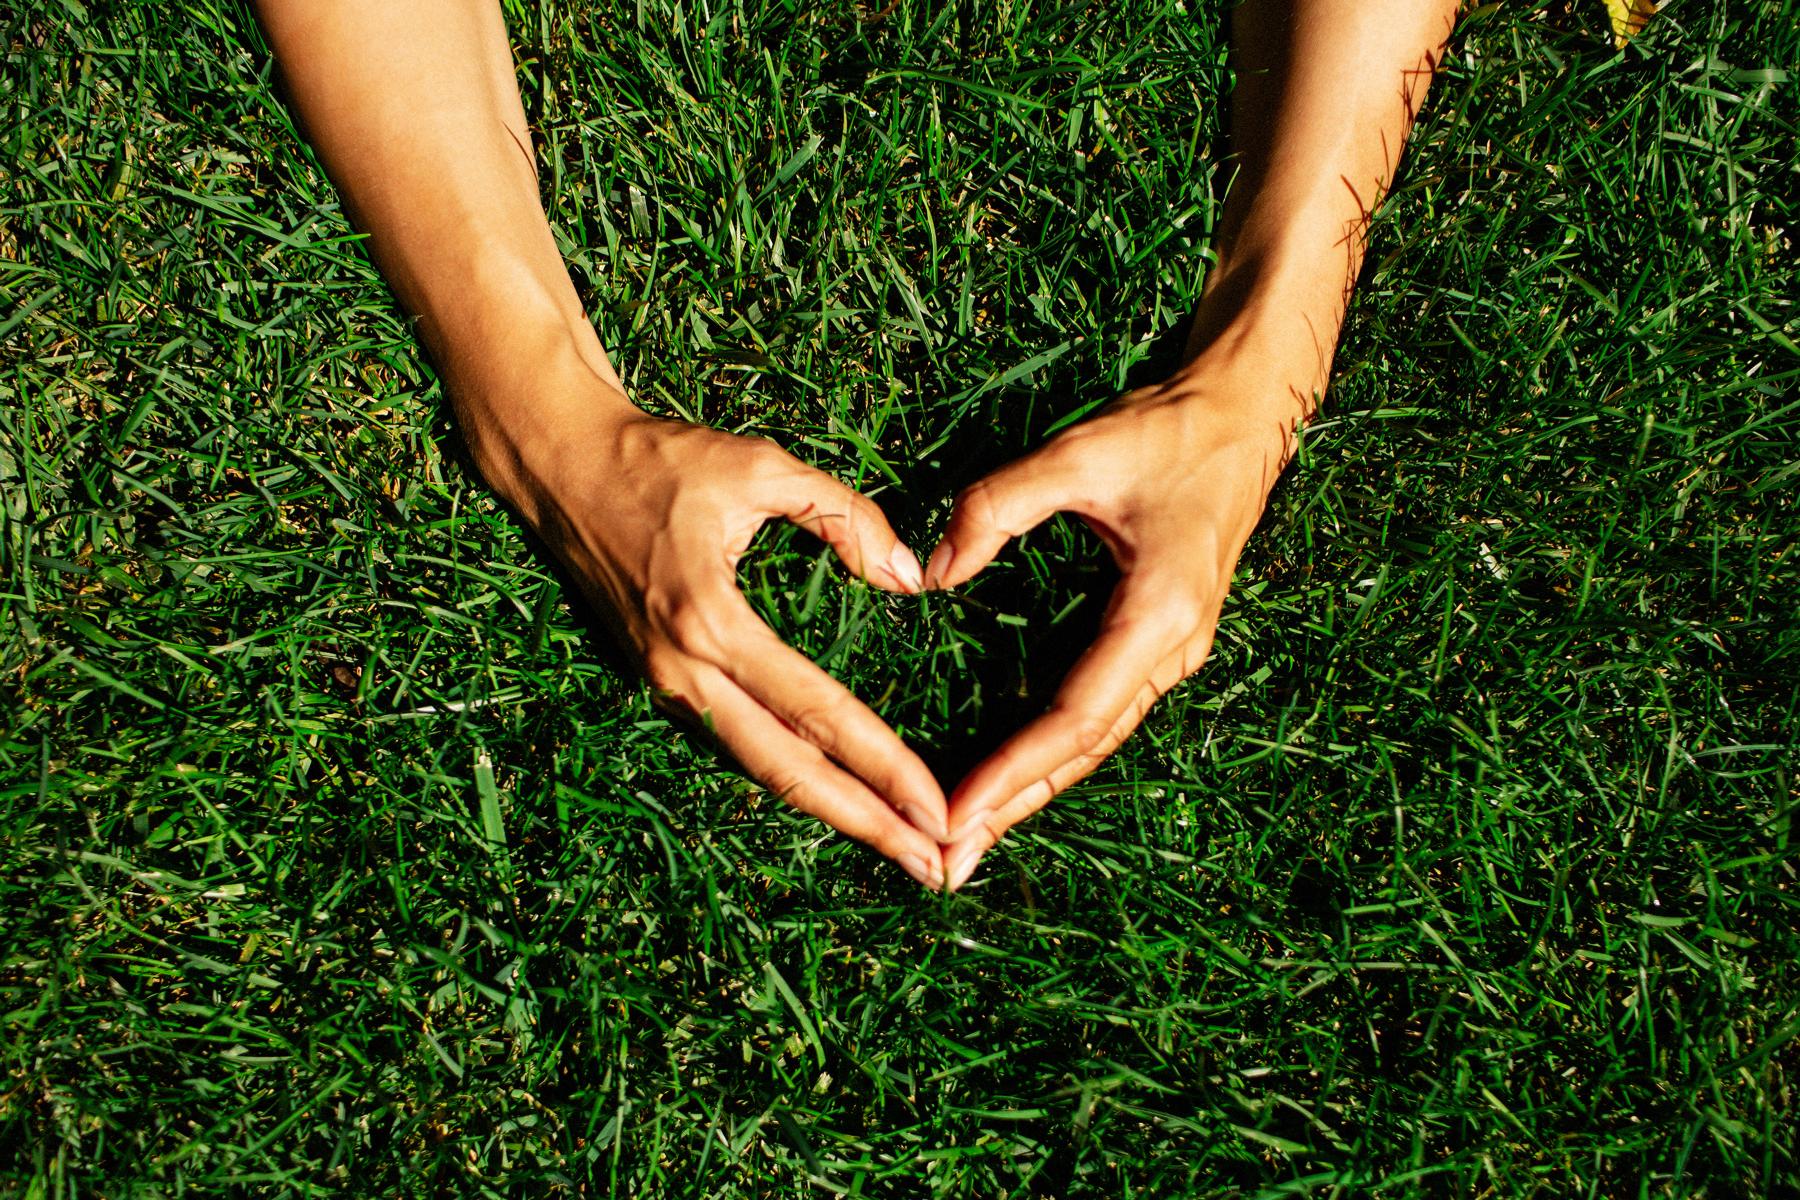 hands make heart shape in grass